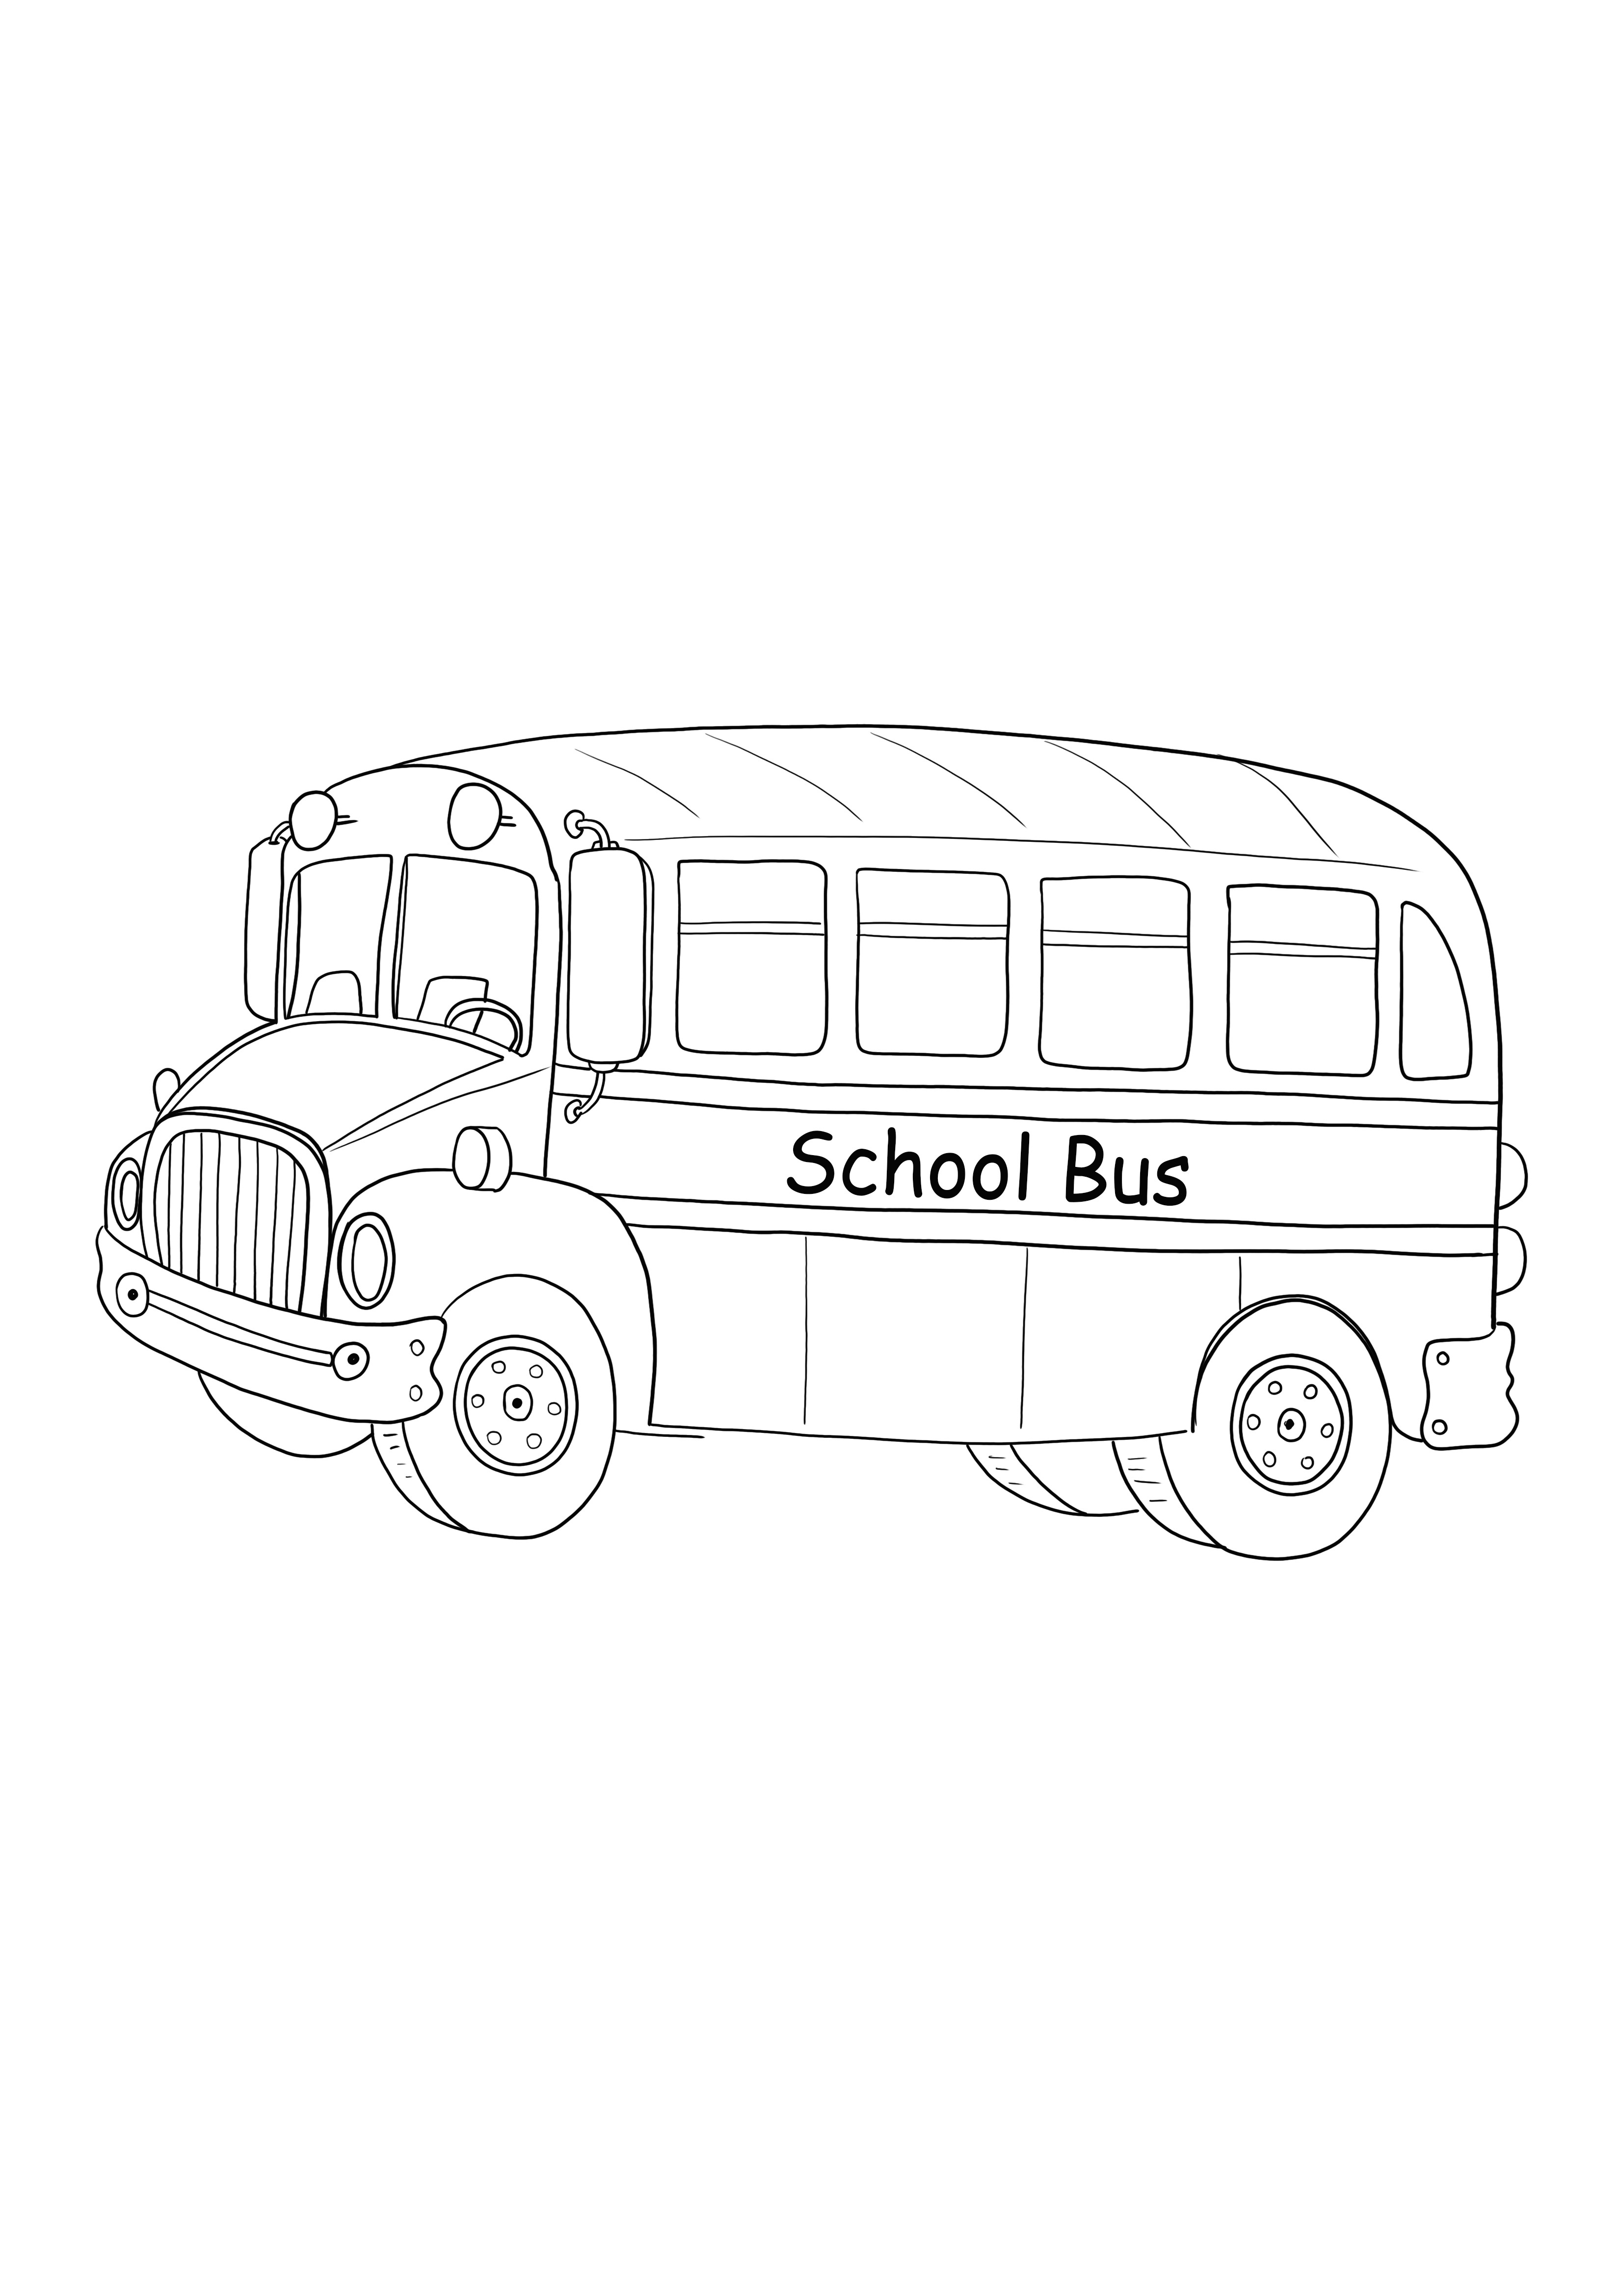 Pobieranie starego szkolnego autobusu i bezpłatne drukowanie